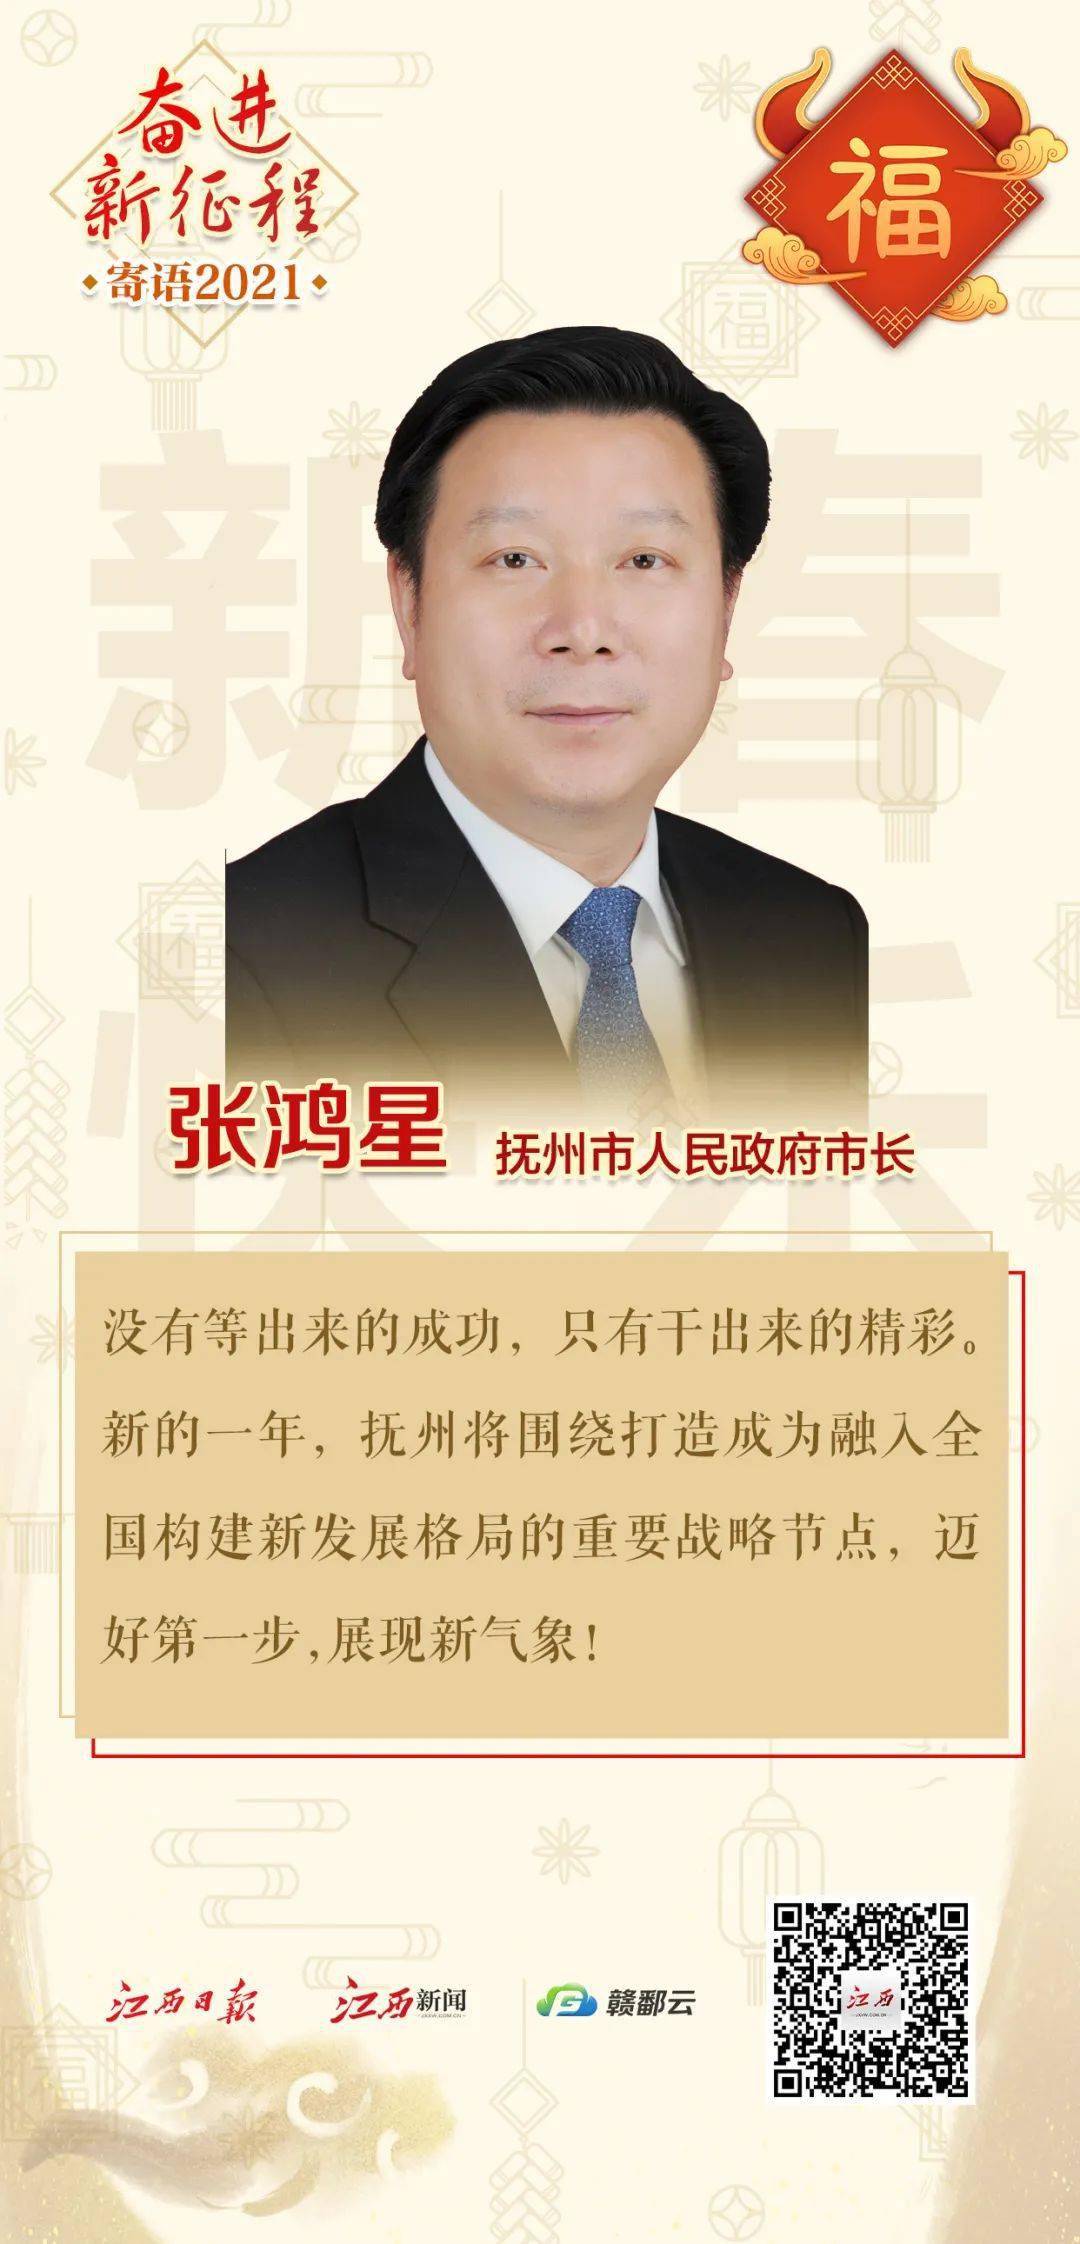 吉安市市长王少玄抚州市市长张鸿星向全省人民恭贺新春